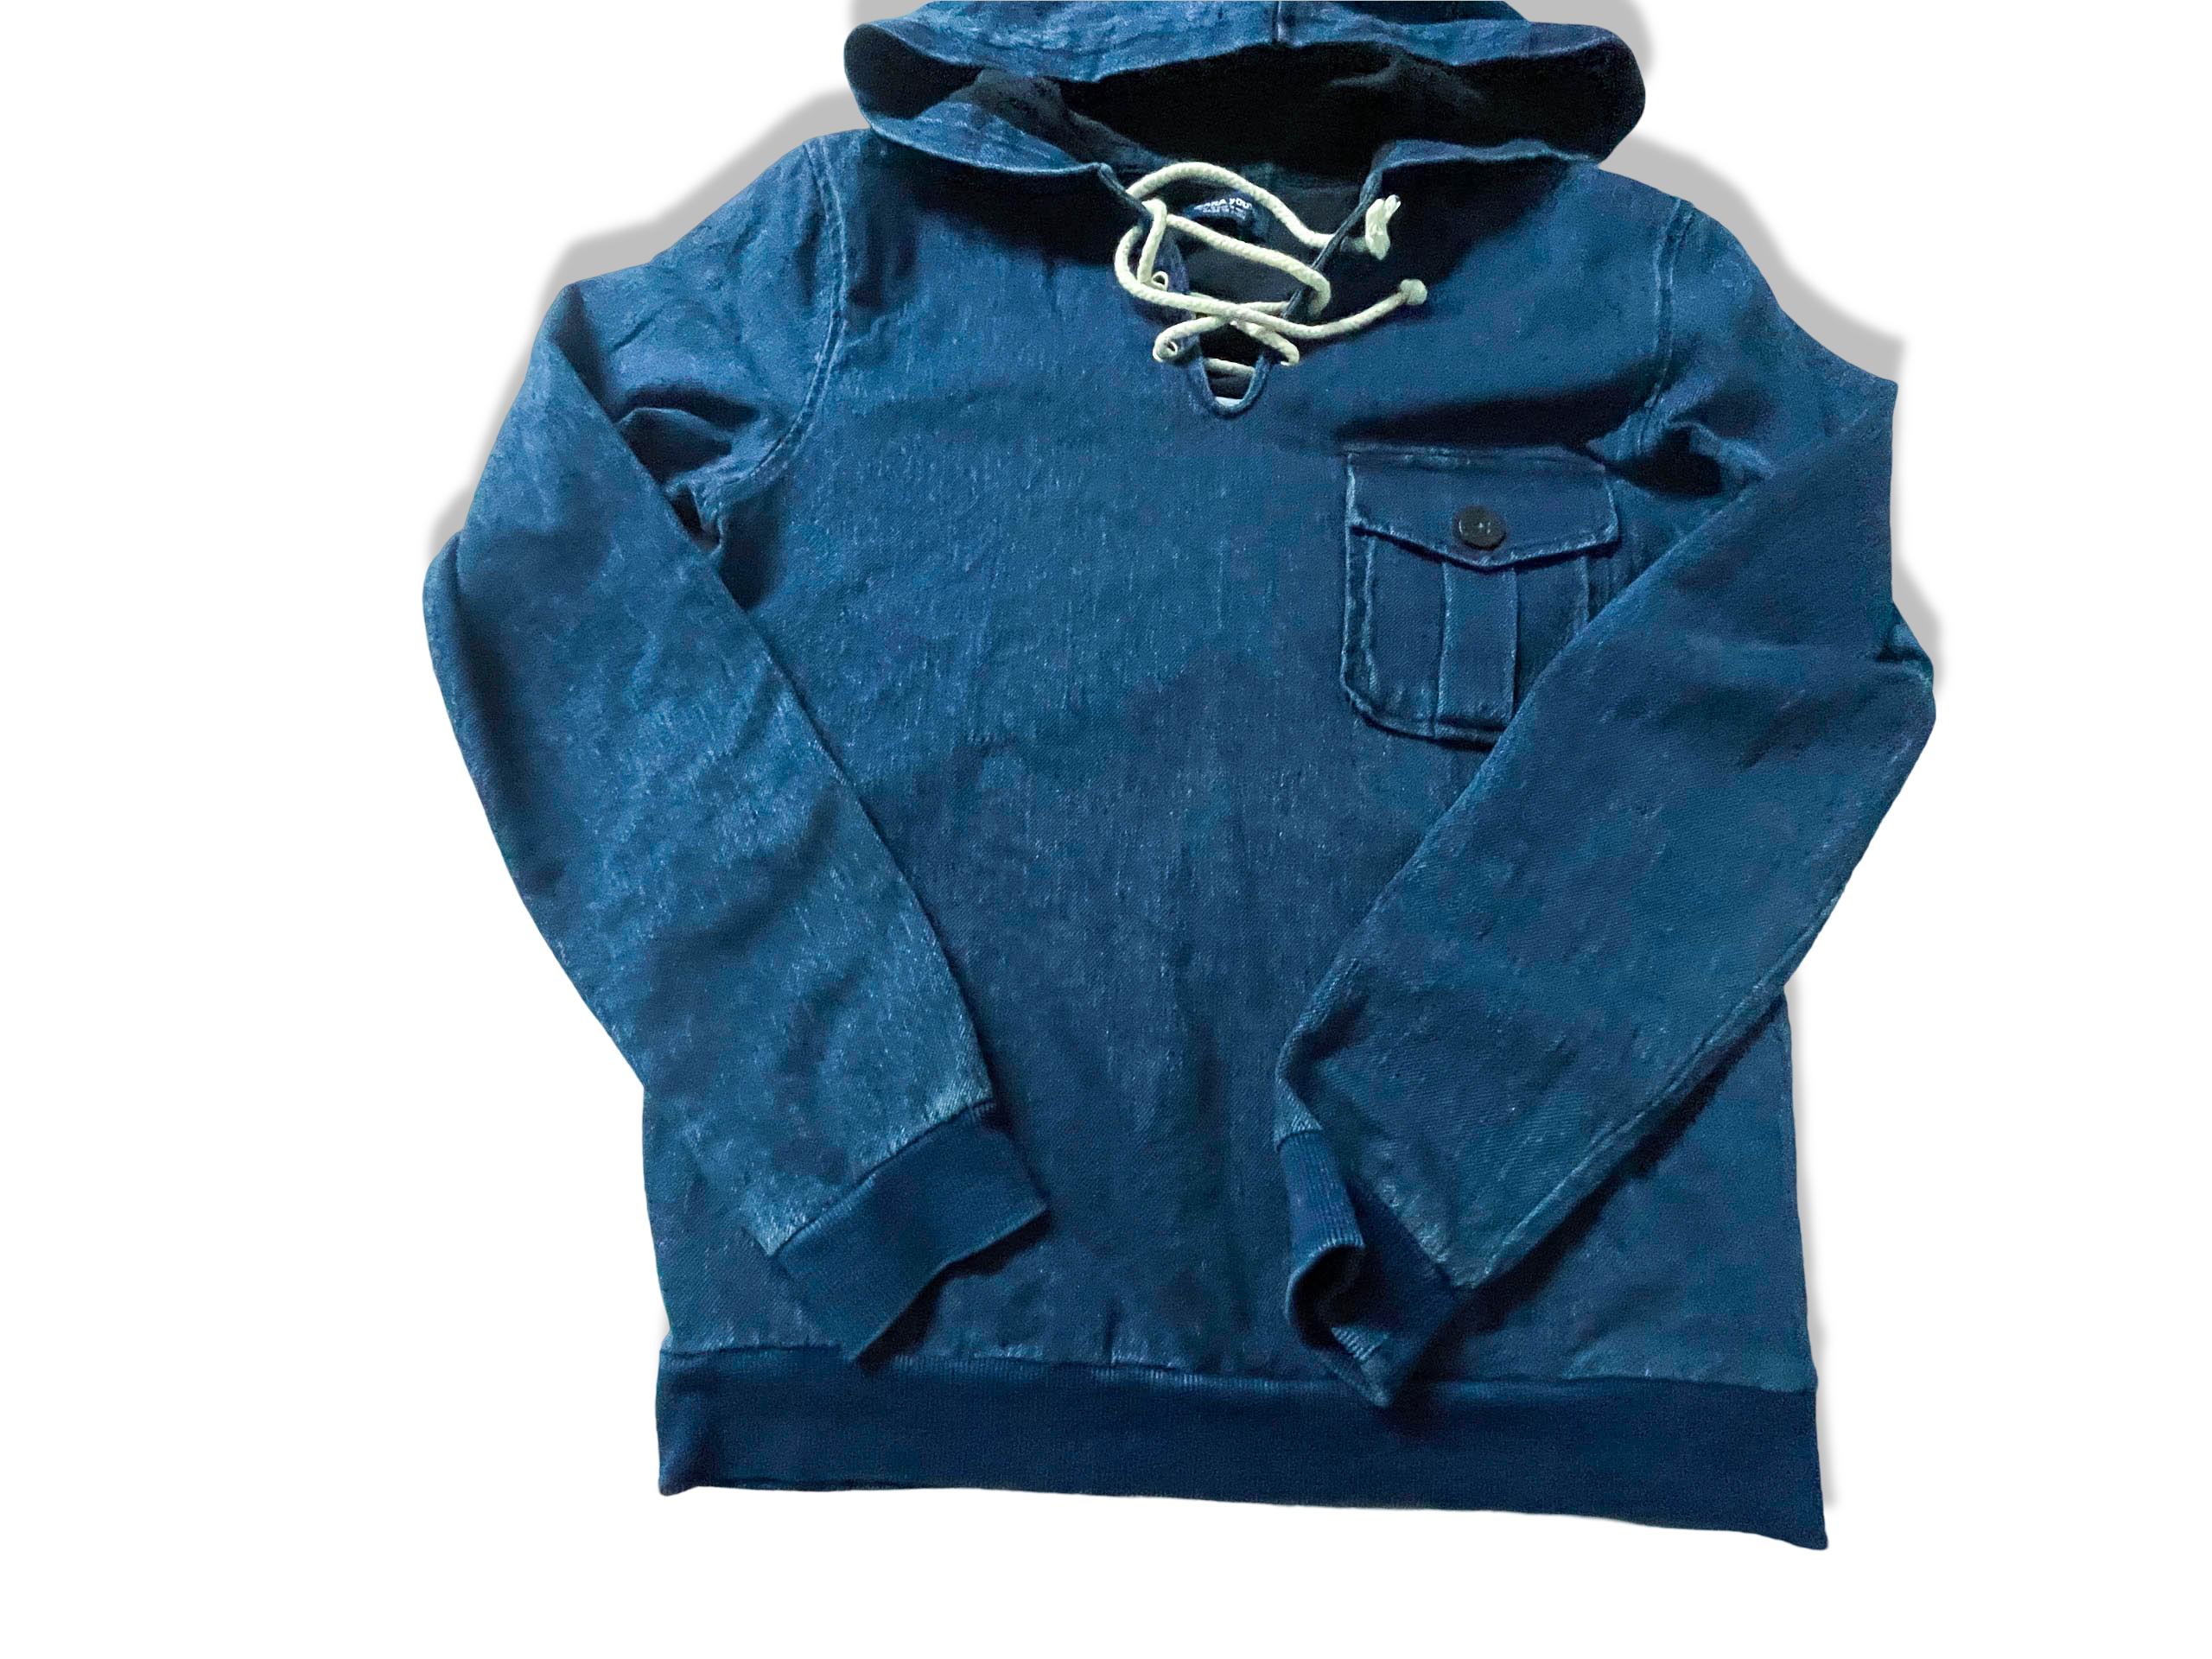 Zara Man Pullover blue denim hoodie in M|L25 W19|SKU 3917